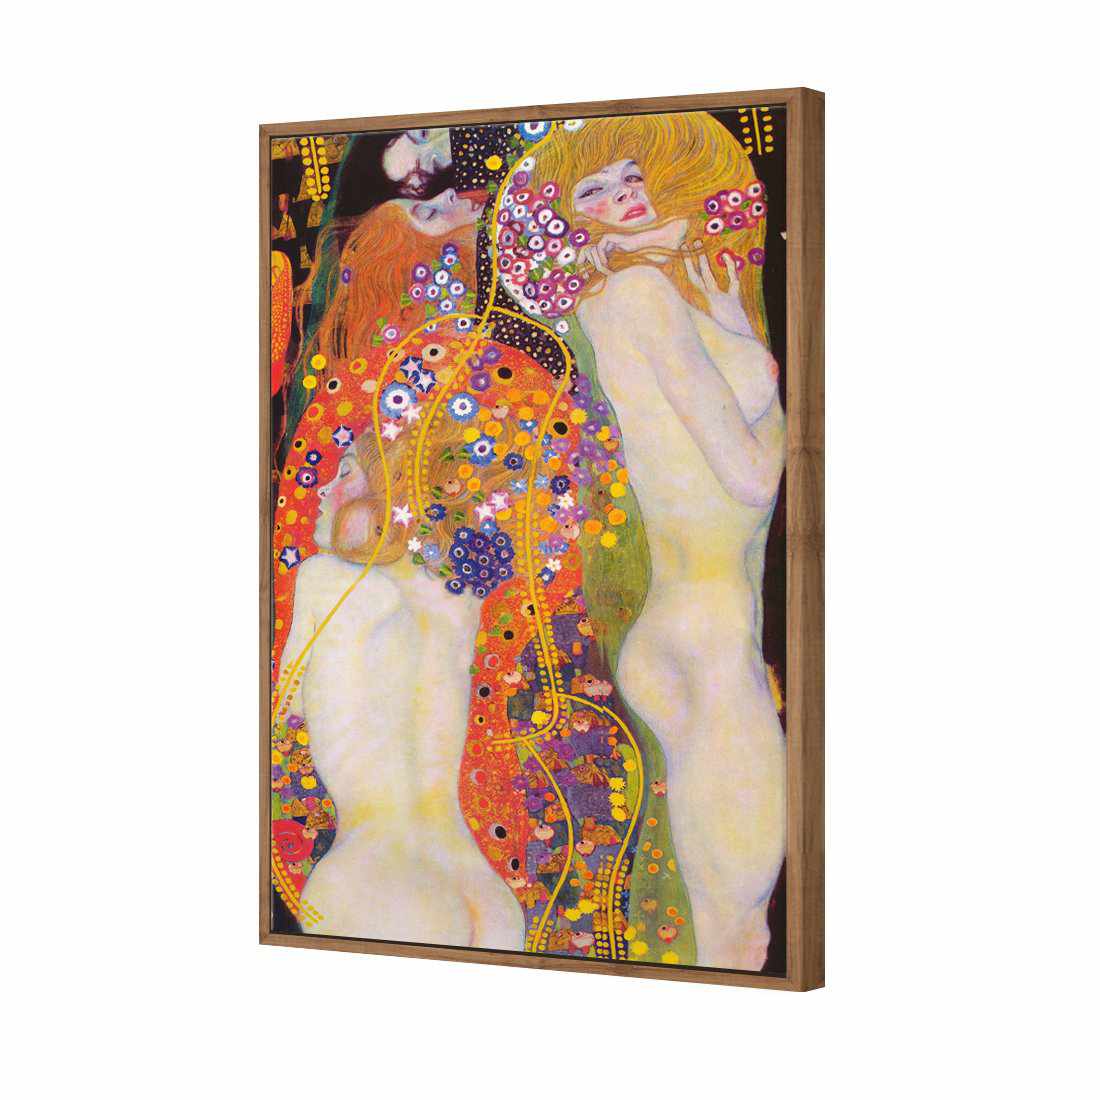 Water Serpents - Gustav Klimt Canvas Art-Canvas-Wall Art Designs-45x30cm-Canvas - Natural Frame-Wall Art Designs